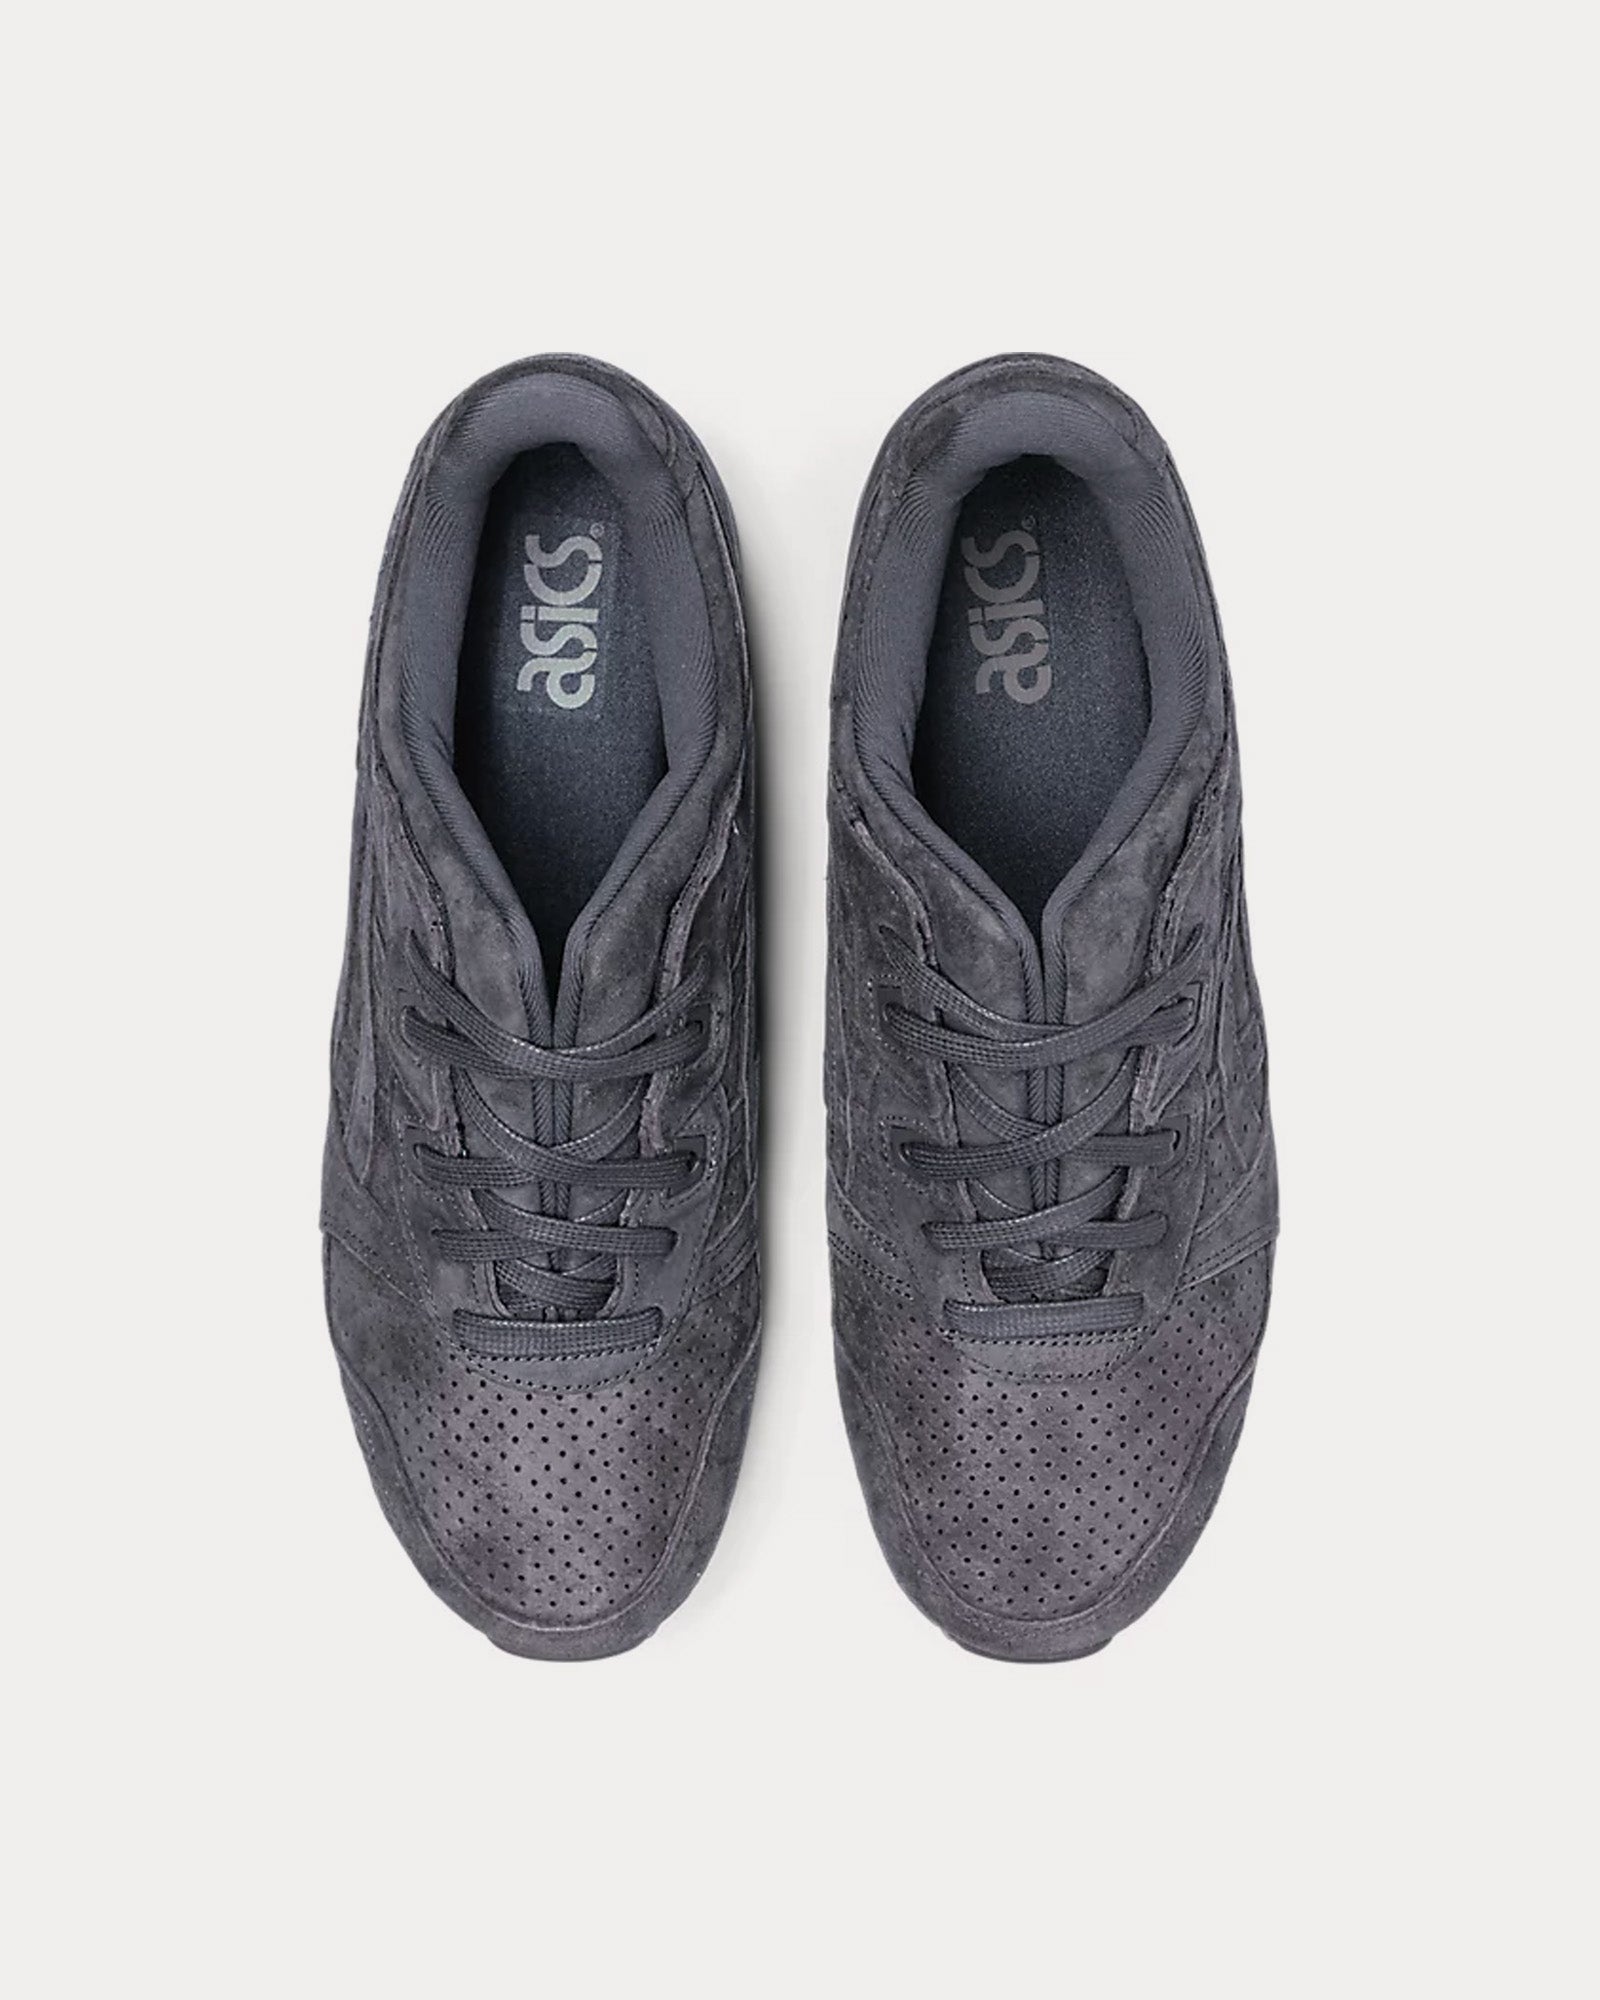 Asics - Gel-Lyte III OG Obsidian Grey / Obsidian Grey Low Top Sneakers